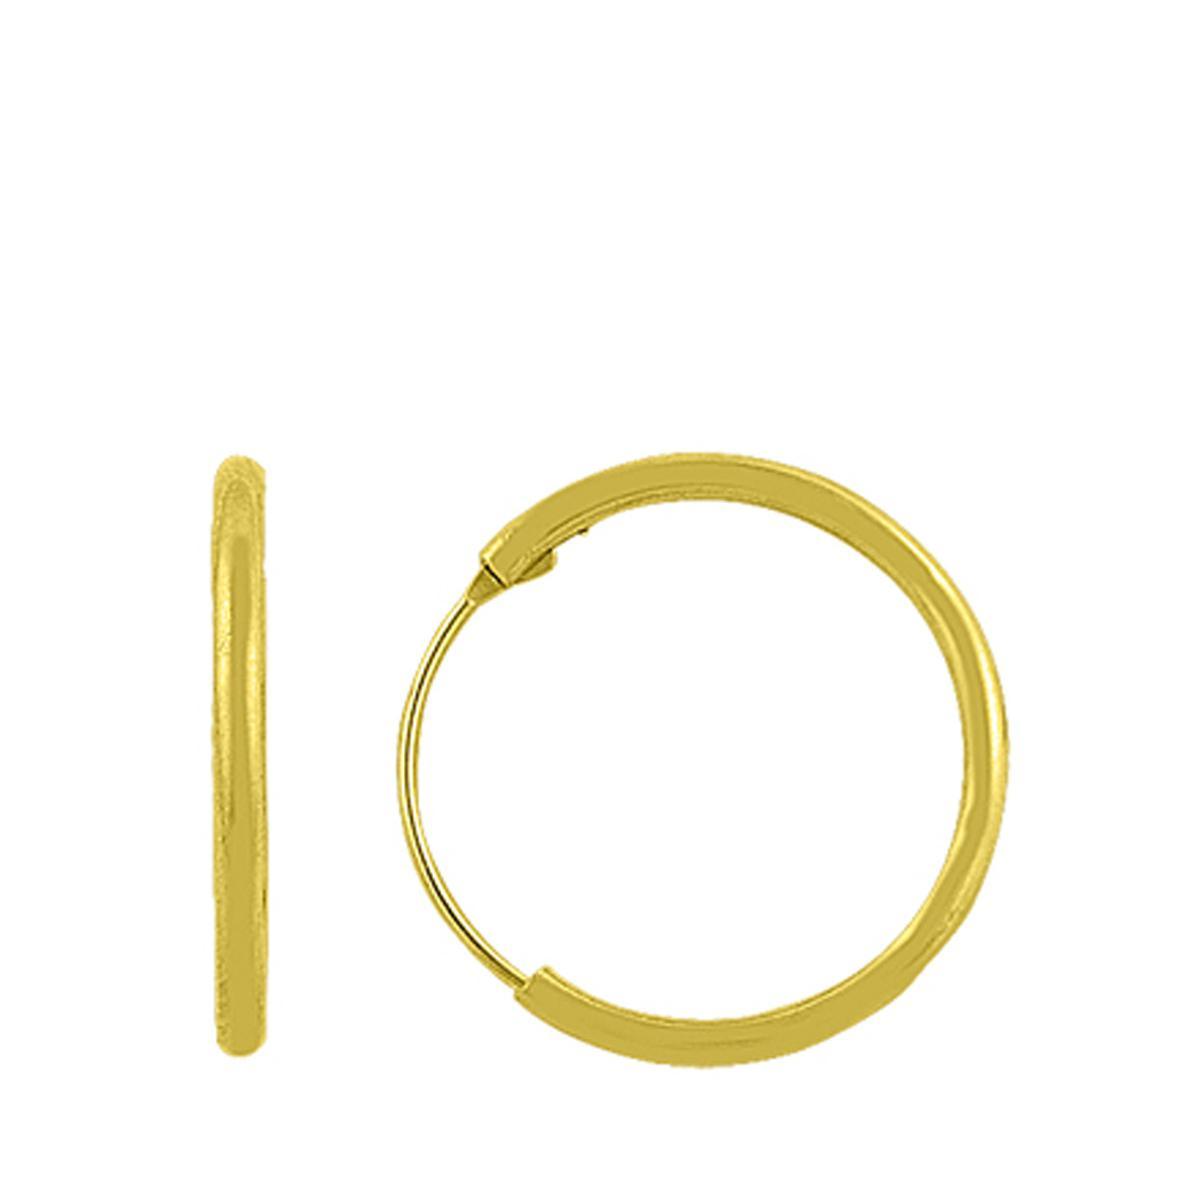 Mini Hoop Gold Earrings, Hoops Gold Earrings, Small Hoop Gold Earrings - Trending Silver Gifts